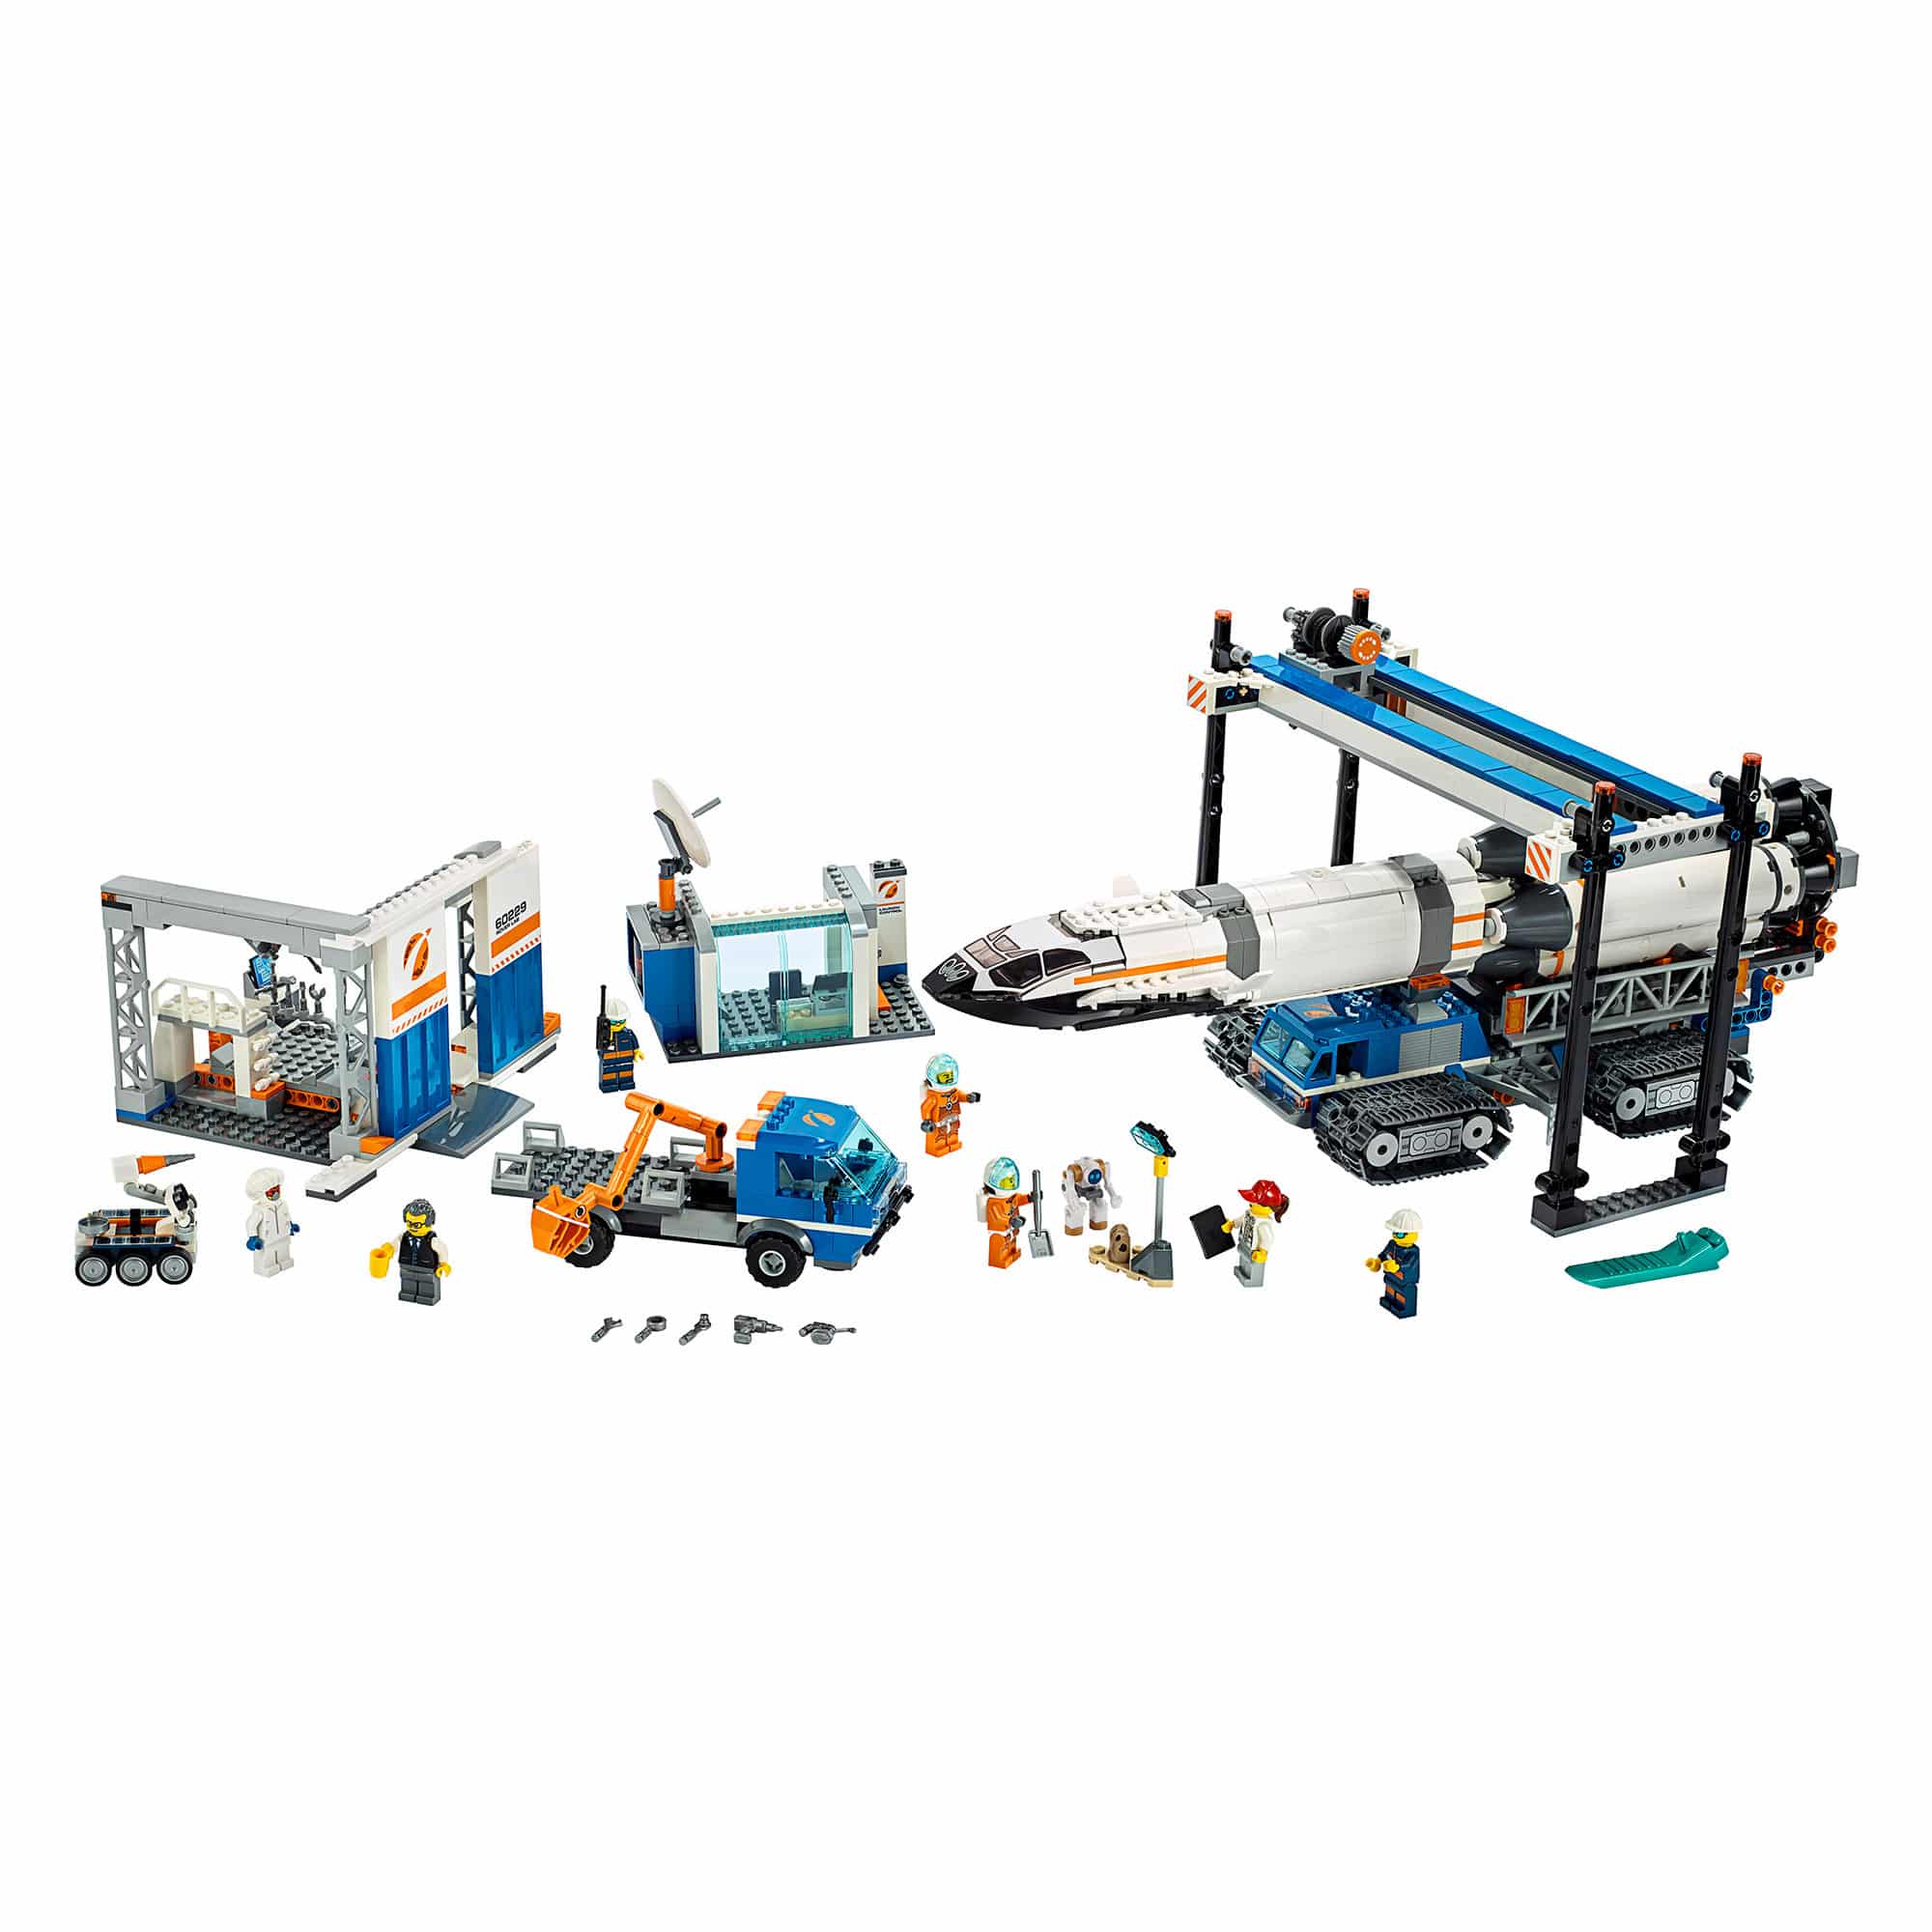 LEGO City - 60229 Rocket Assembly & Transport